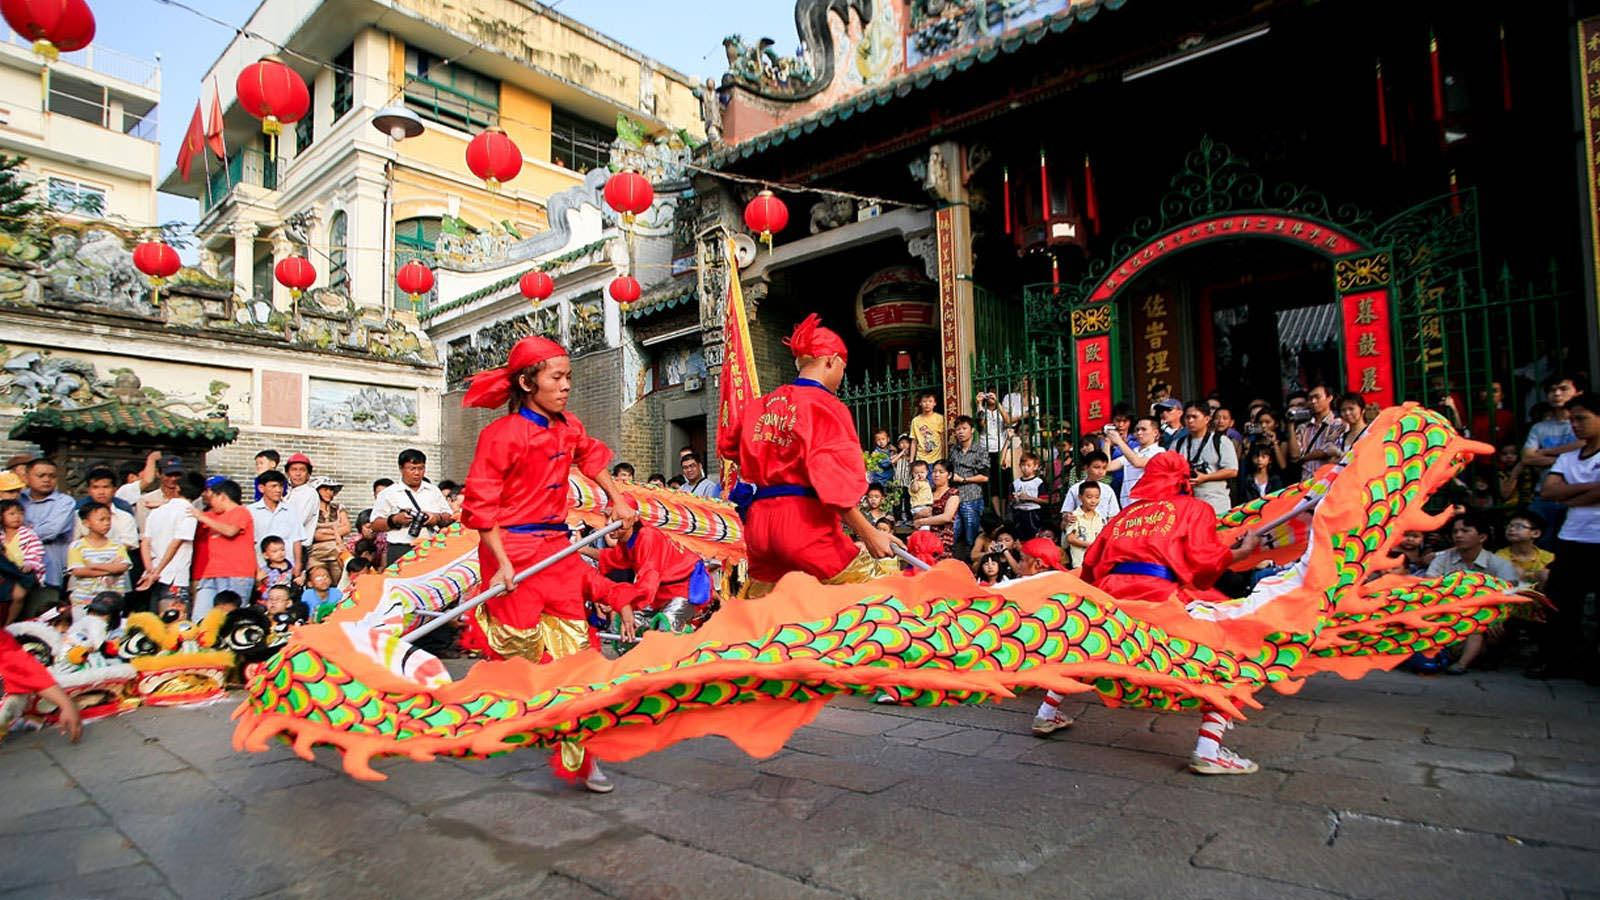 Hochi Minh City Dragon Dancers - Ho Chi Minh City Drakdansare. Wallpaper